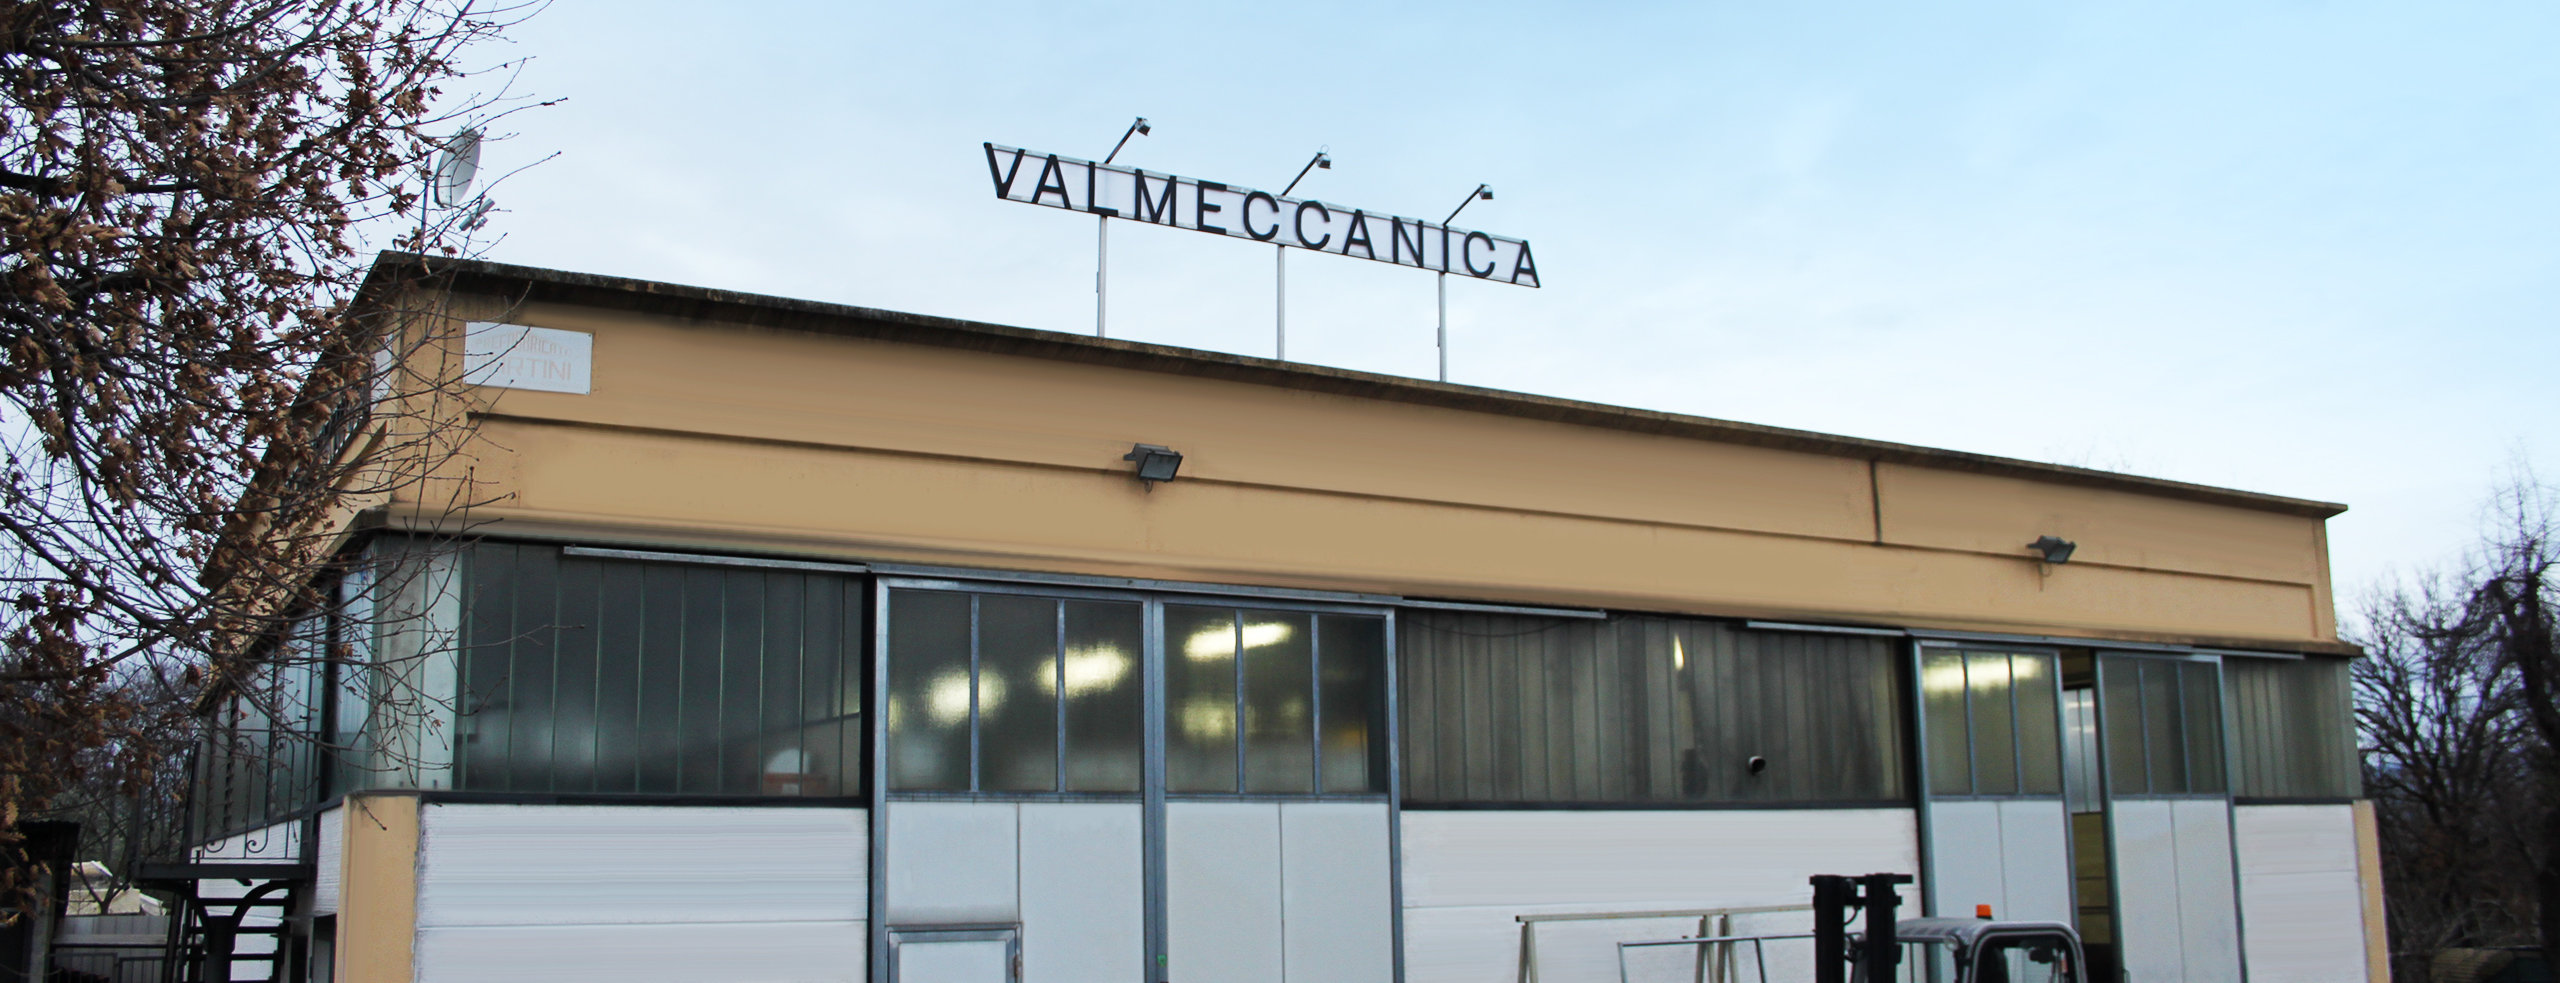 Valmeccanica - Lavorazioni Ferro Battuto - Brolio - Castiglion Fiorentino